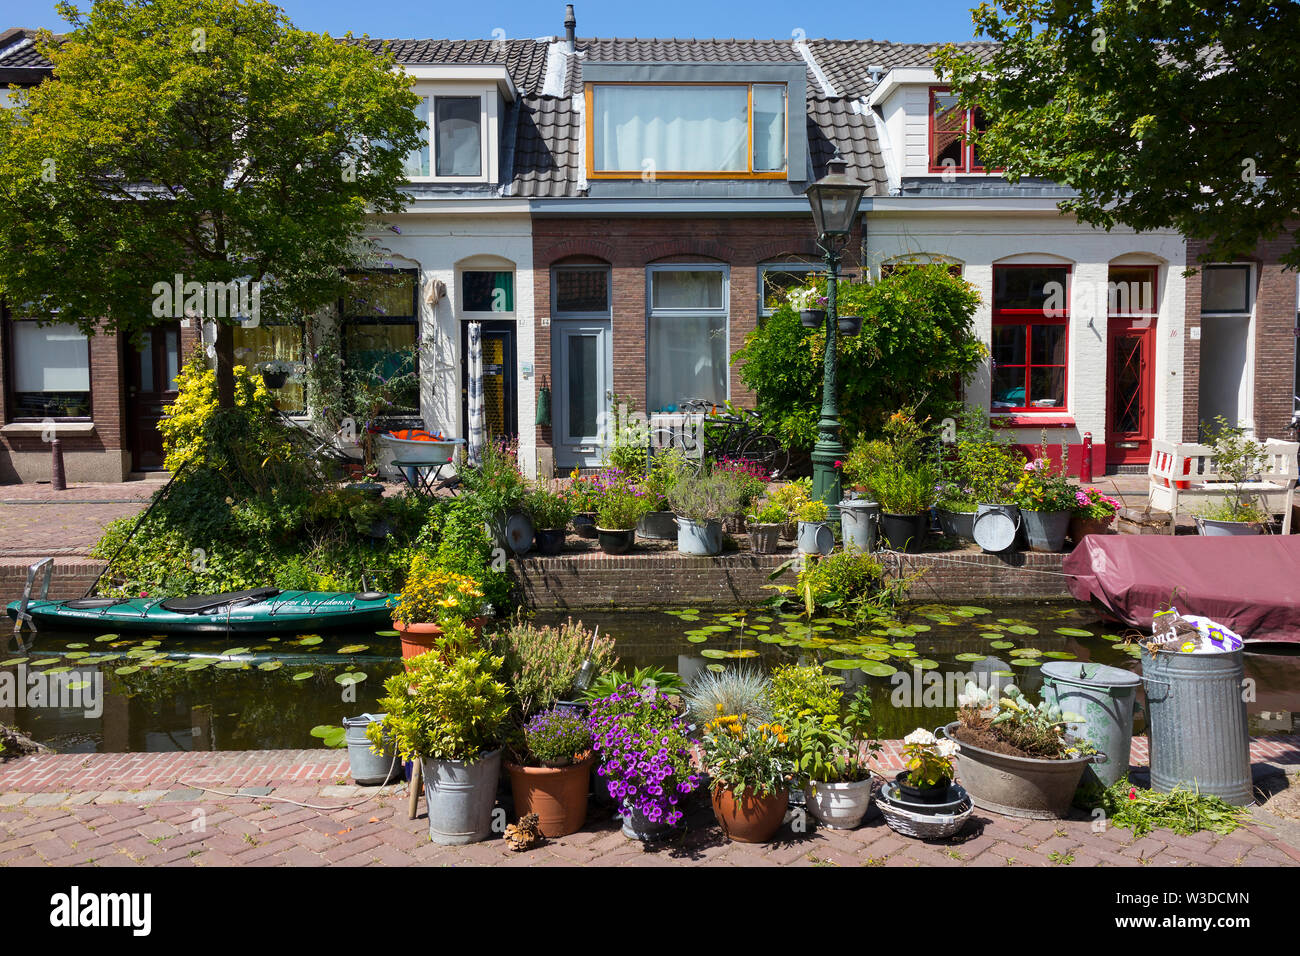 Leiden, Holanda - Julio 05, 2019: Kijfgracht, pequeño canal, en el centro histórico de la ciudad de Leiden, CENER decorado con flores y plantas Foto de stock